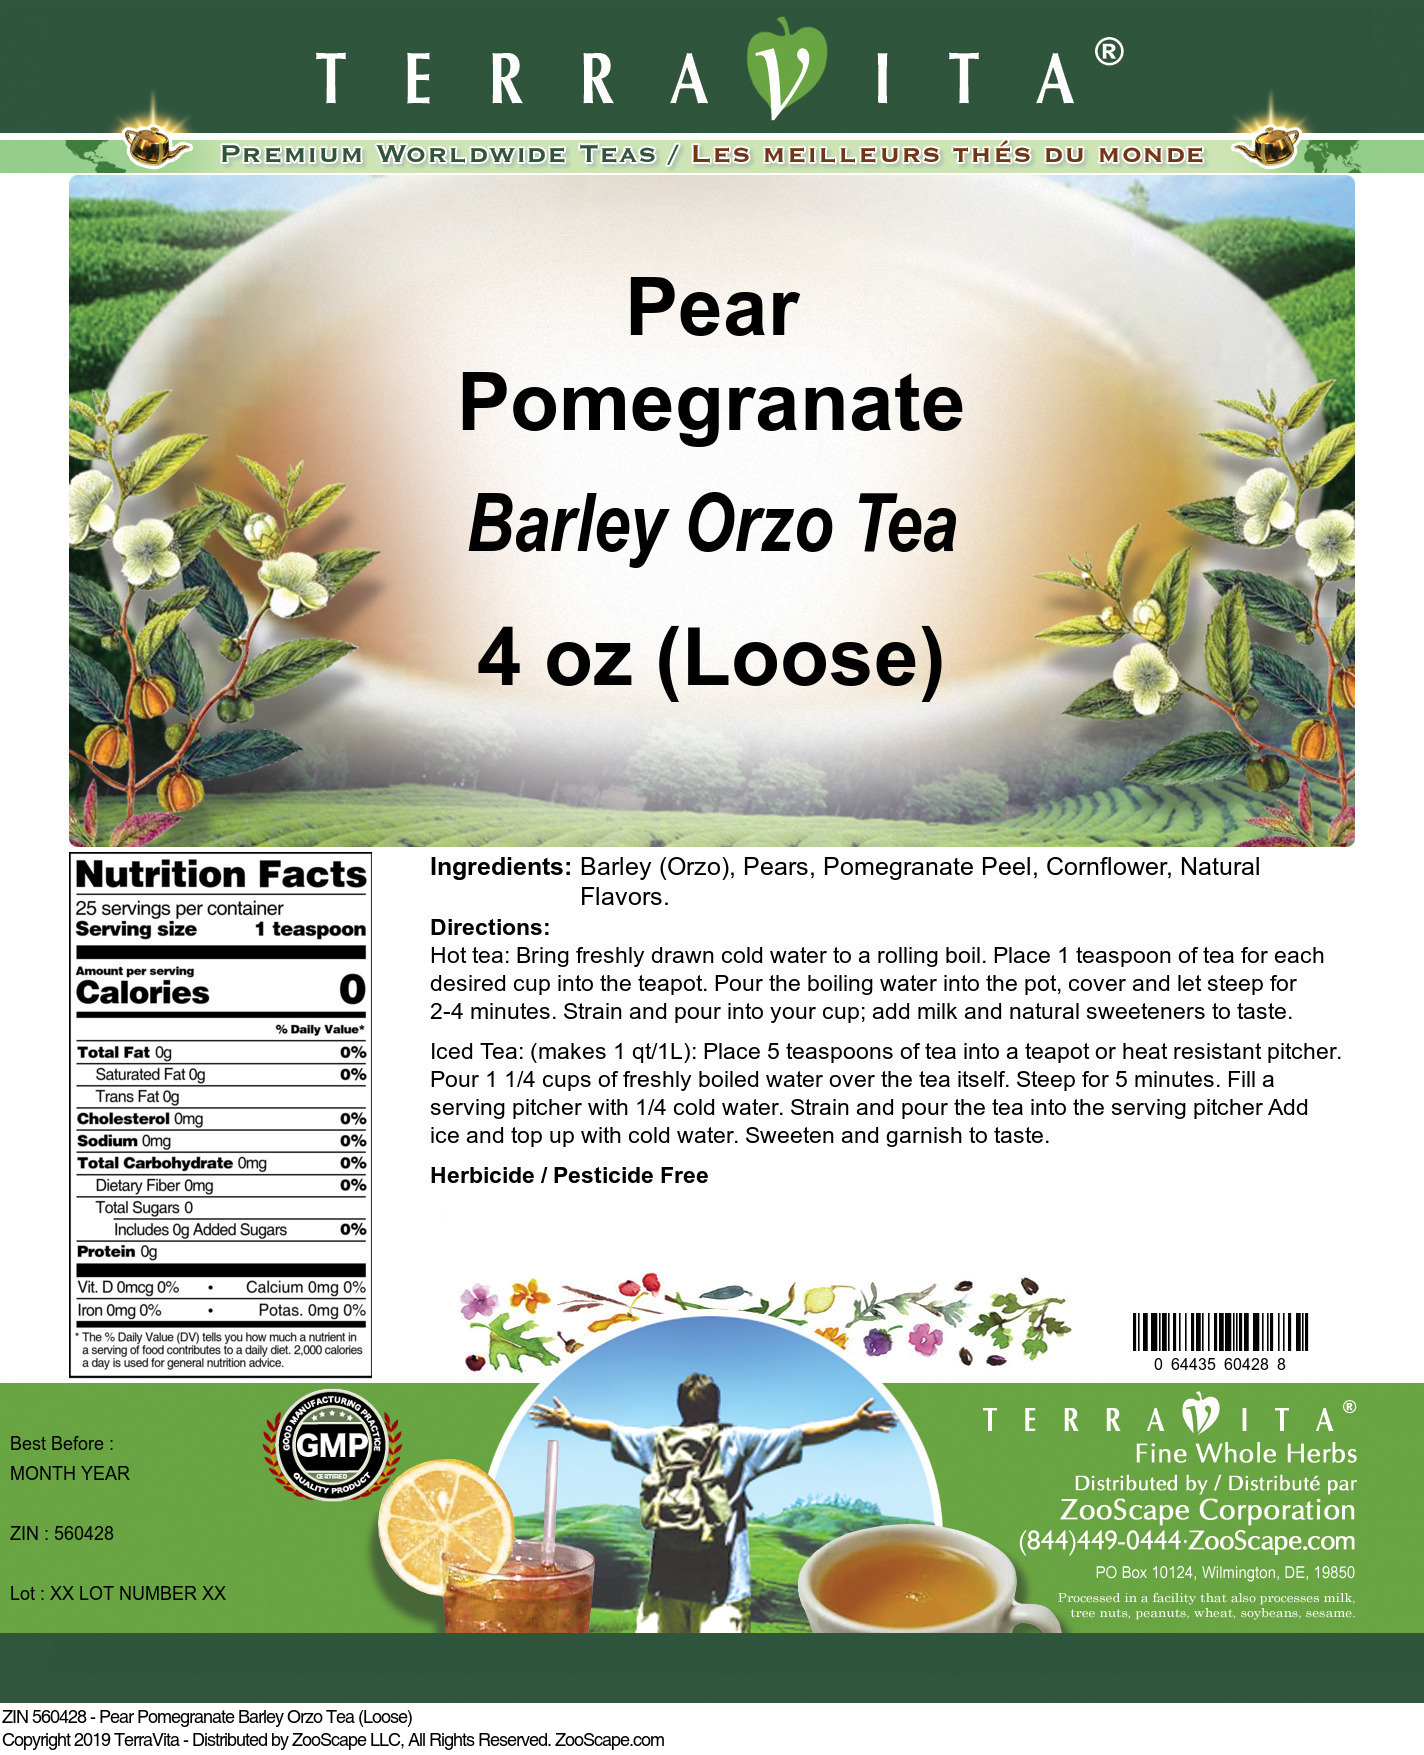 Pear Pomegranate Barley Orzo Tea (Loose) - Label